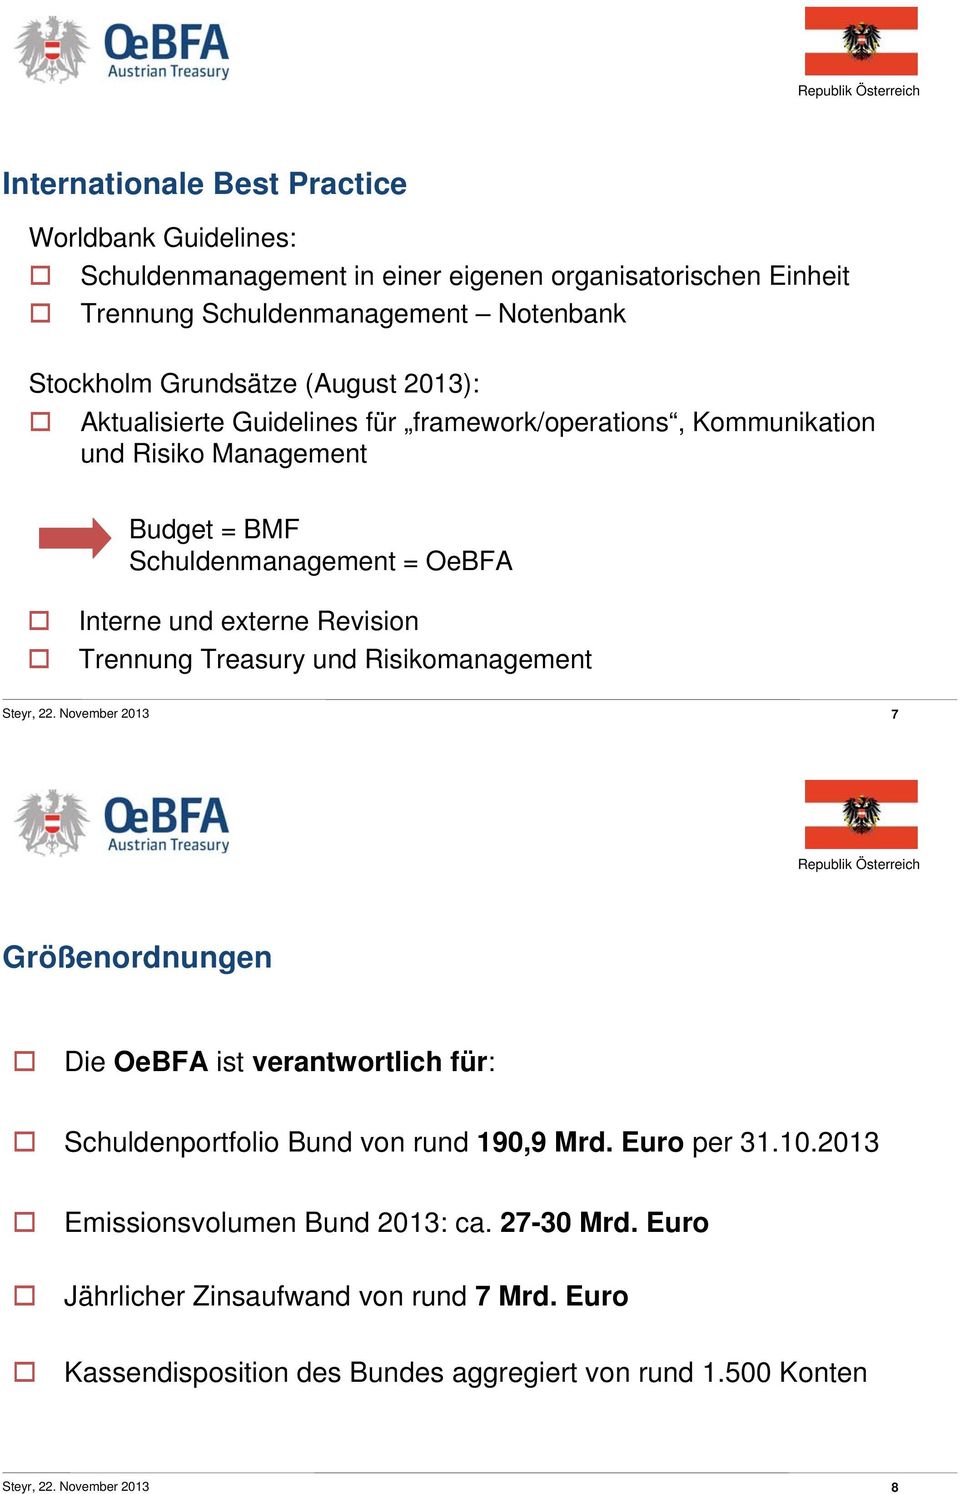 Trennung Treasury und Risikomanagement Steyr, 22. November 2013 7 Größenordnungen Die OeBFA ist verantwortlich für: Schuldenportfolio Bund von rund 190,9 Mrd. Euro per 31.10.